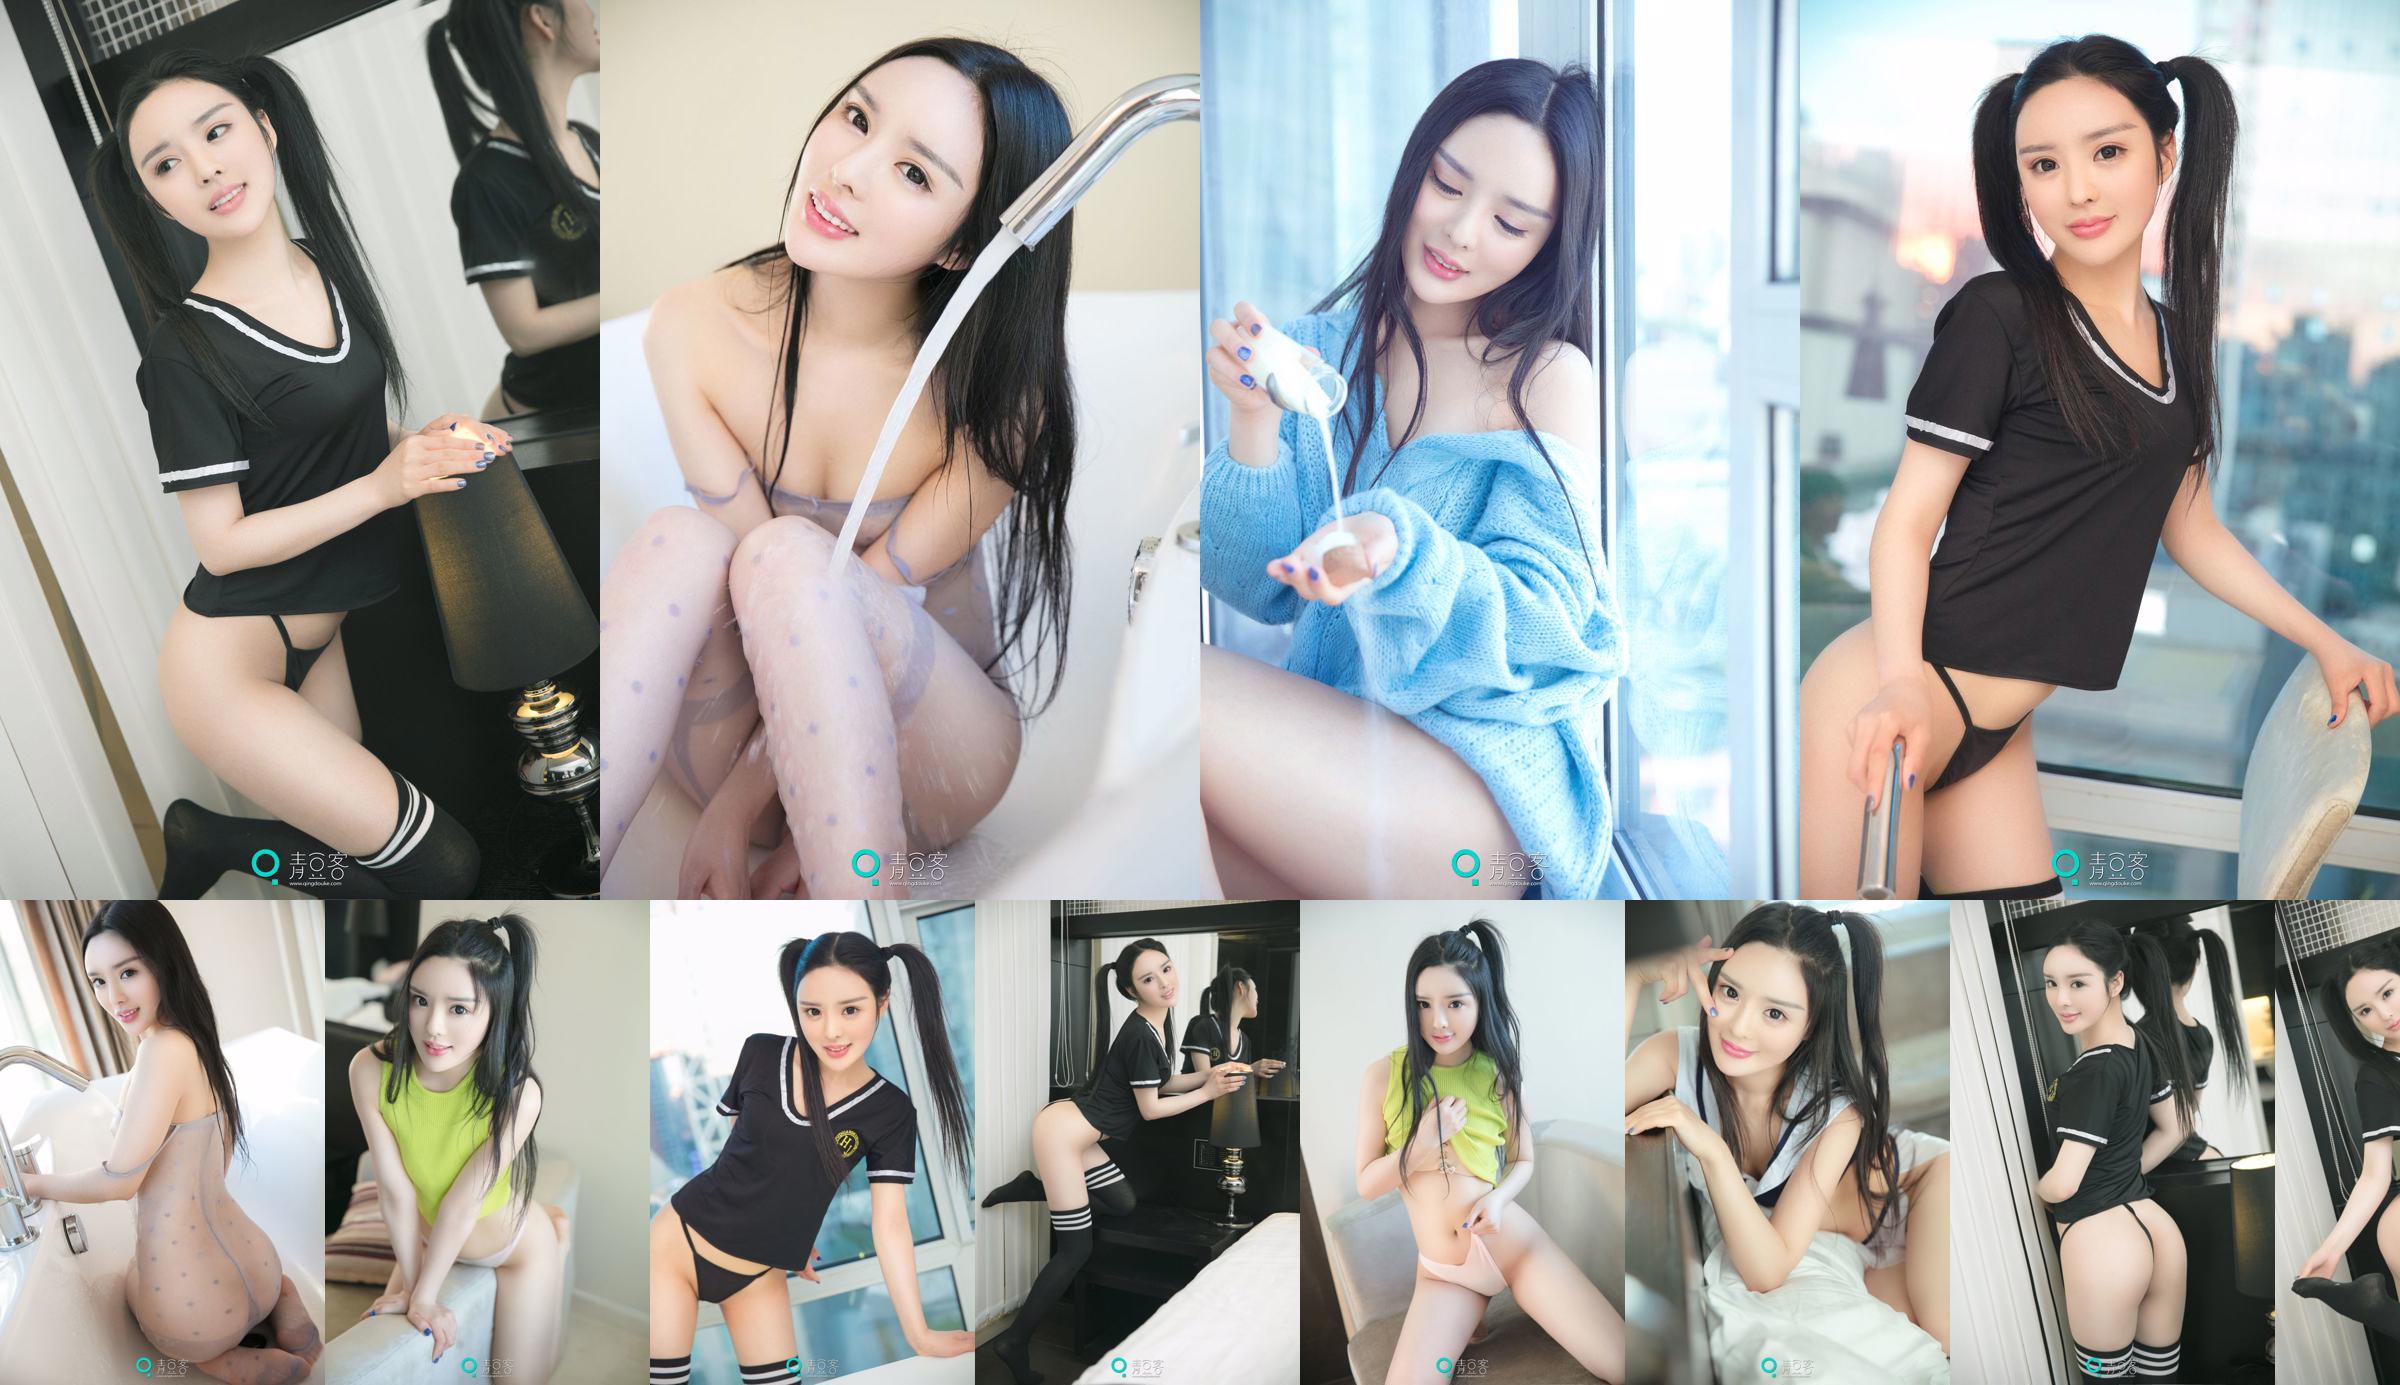 Xiao Di "The Temptation of a Playful Girl" [Qing Dou Ke] No.2a0428 Halaman 22